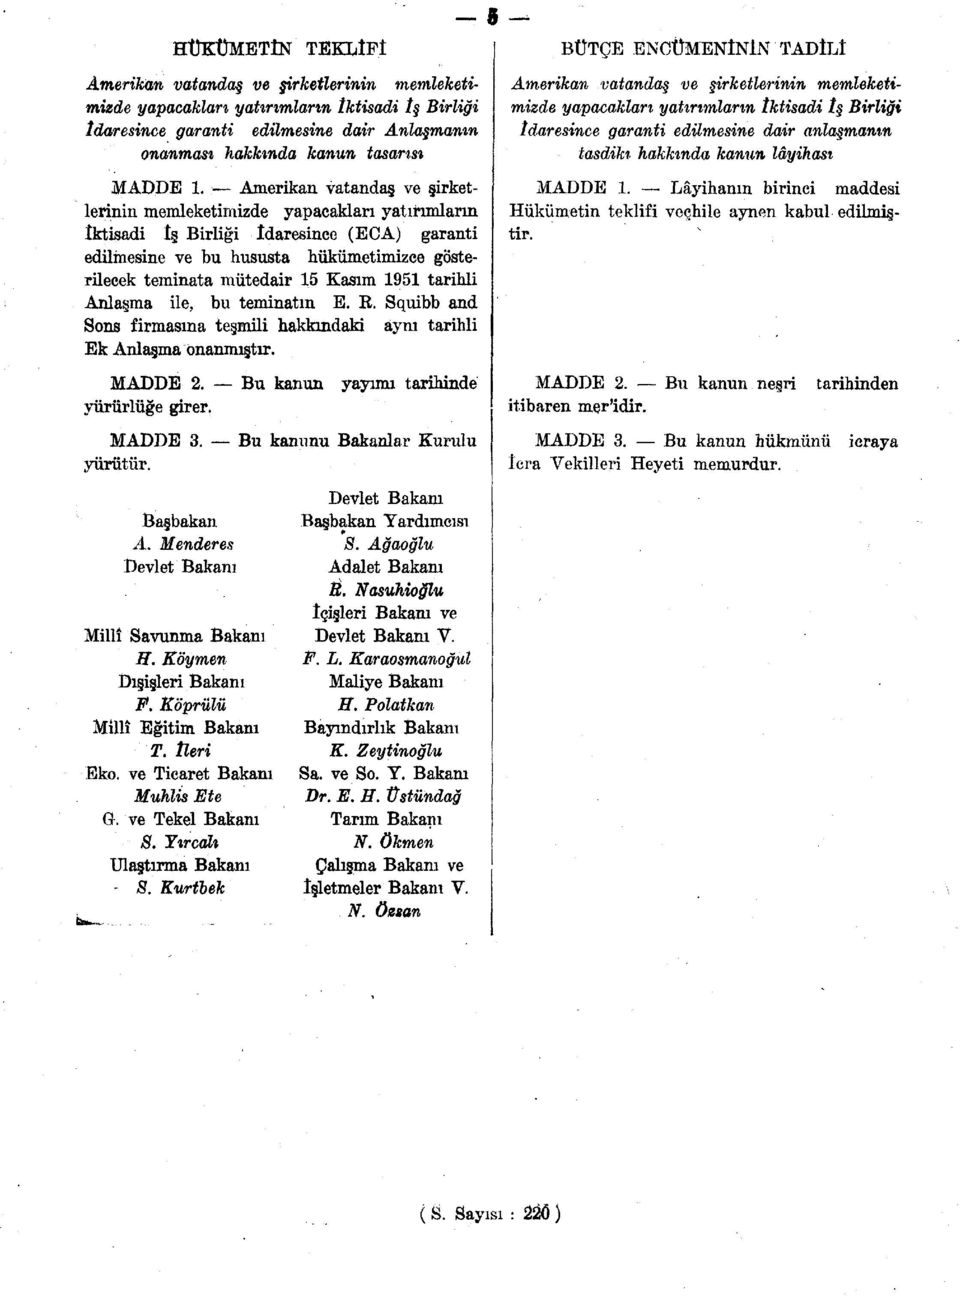 1951 tarihli Anlaşma ile, bu teminatın E. E. Squibb and Sons firmasına teşmili hakkındaki aynı tarihli Ek Anlaşma onanmıştır. MADDE 2. Bu kanun yayımı tarihinde yürürlüğe girer. MADDE 3.